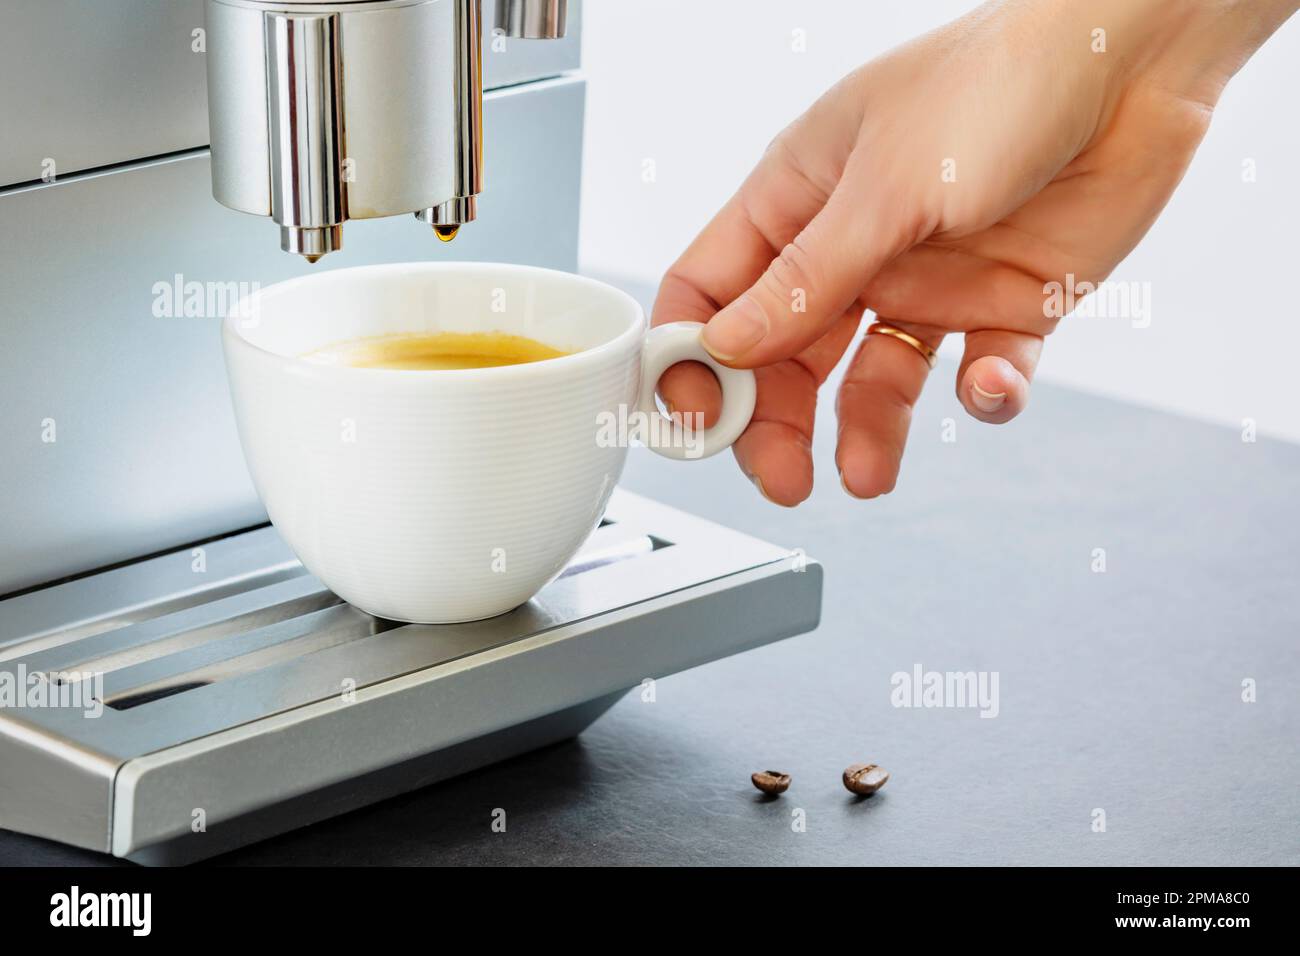 Prise à la main par une femme d'une tasse d'espresso chaud frais